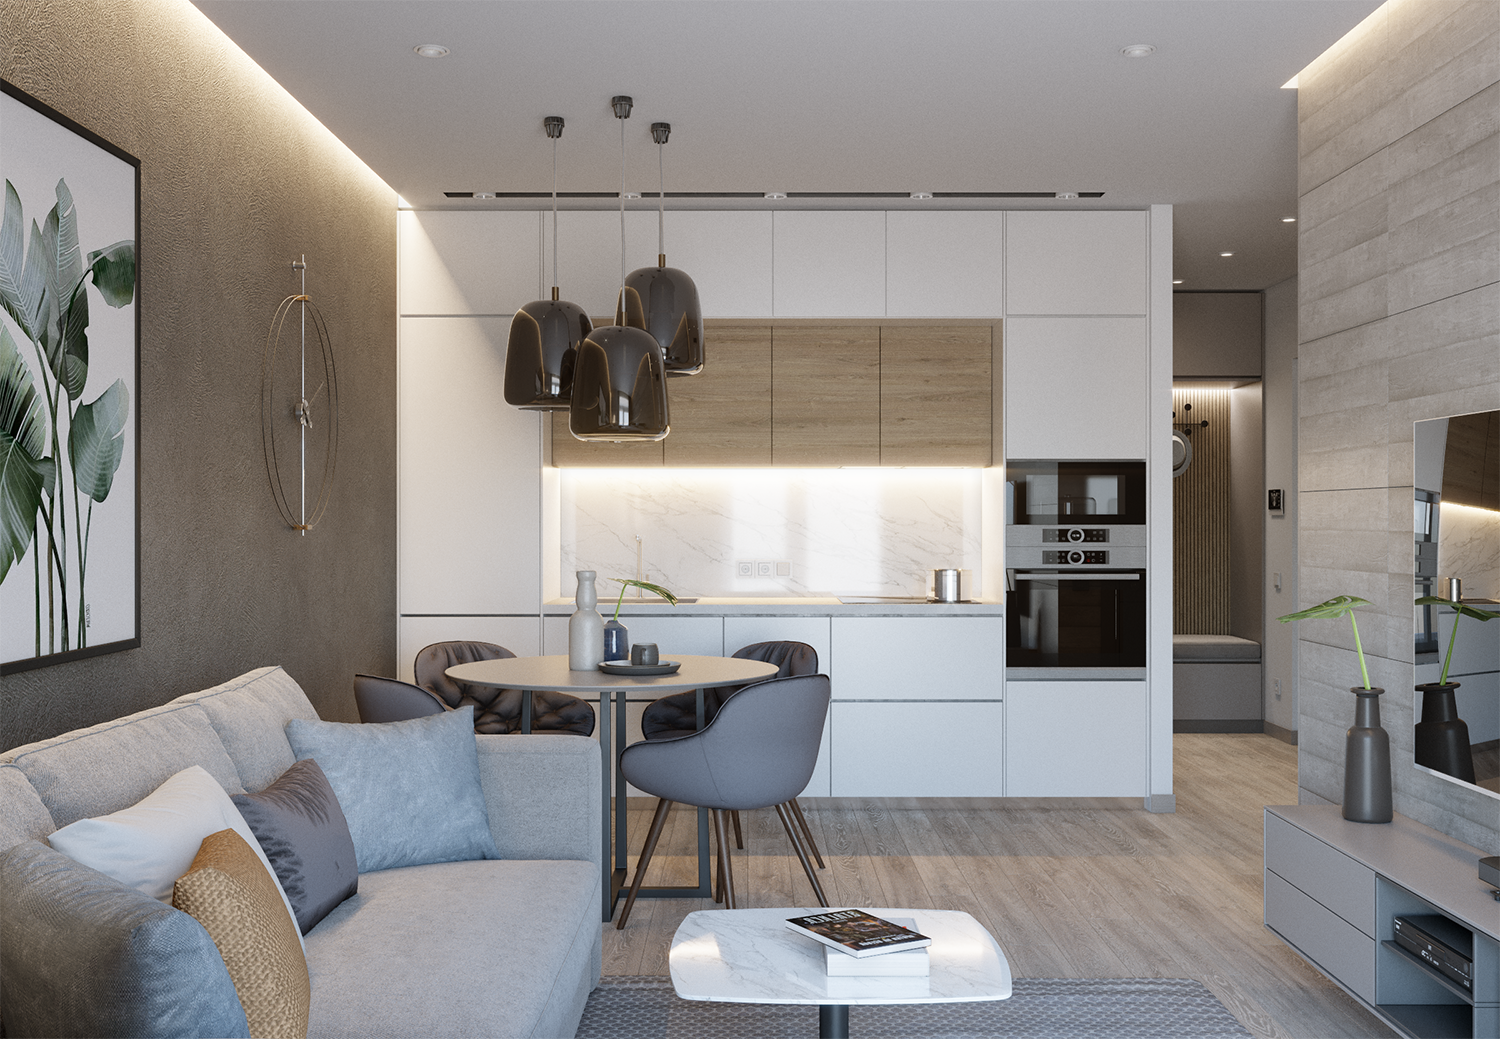 Кухня-гостиная 15 квадратов: дизайн, фото интерьера кухни-студии 15 кв м